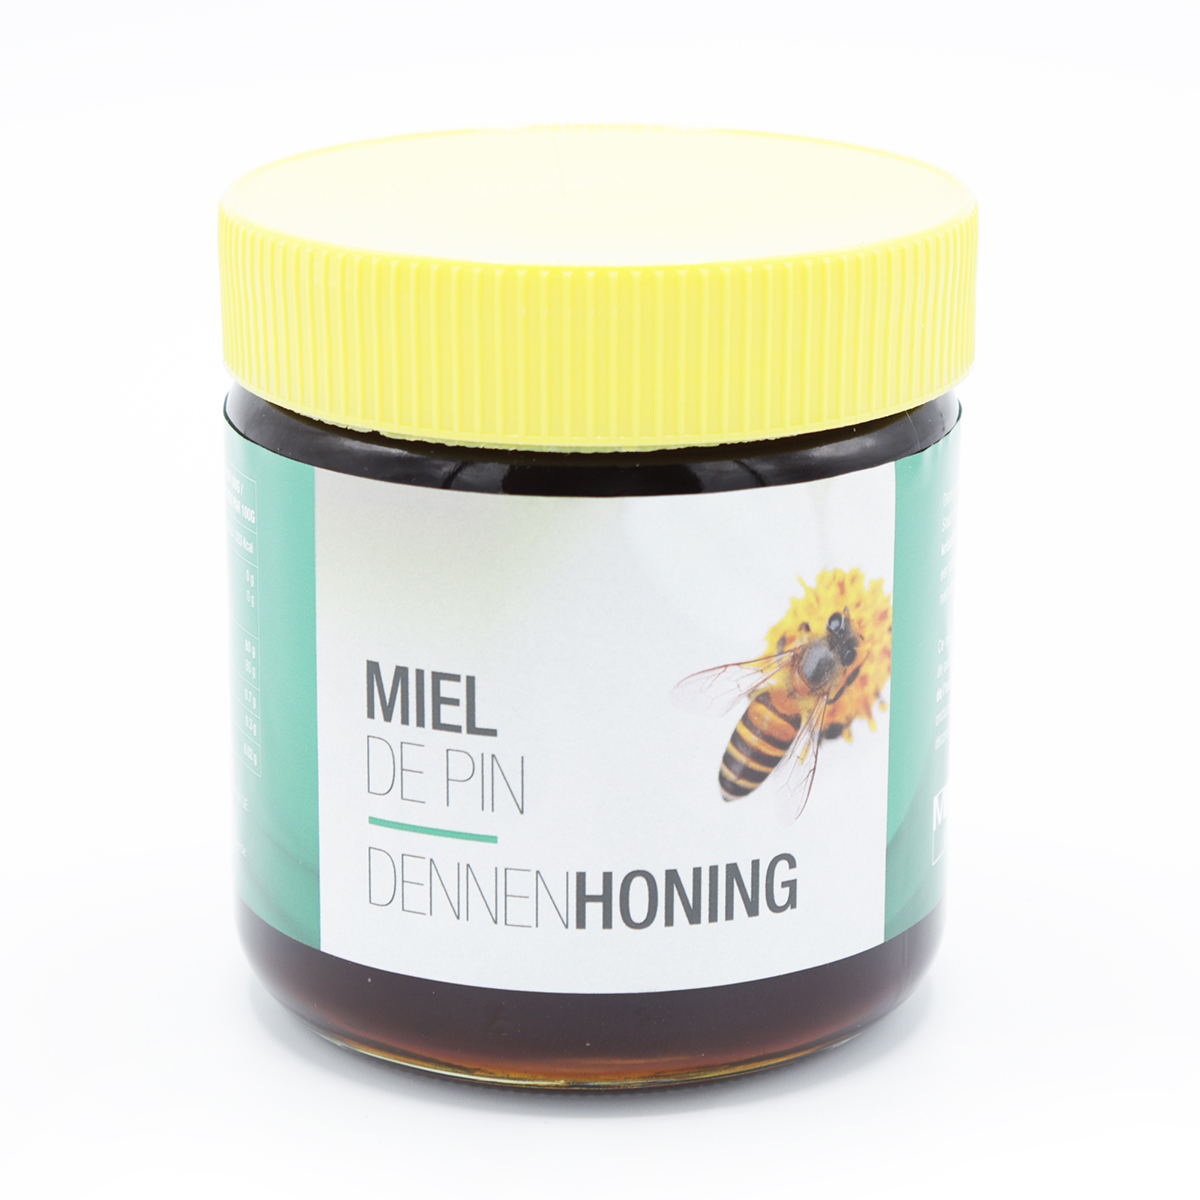 Marma Dennen honing 500g